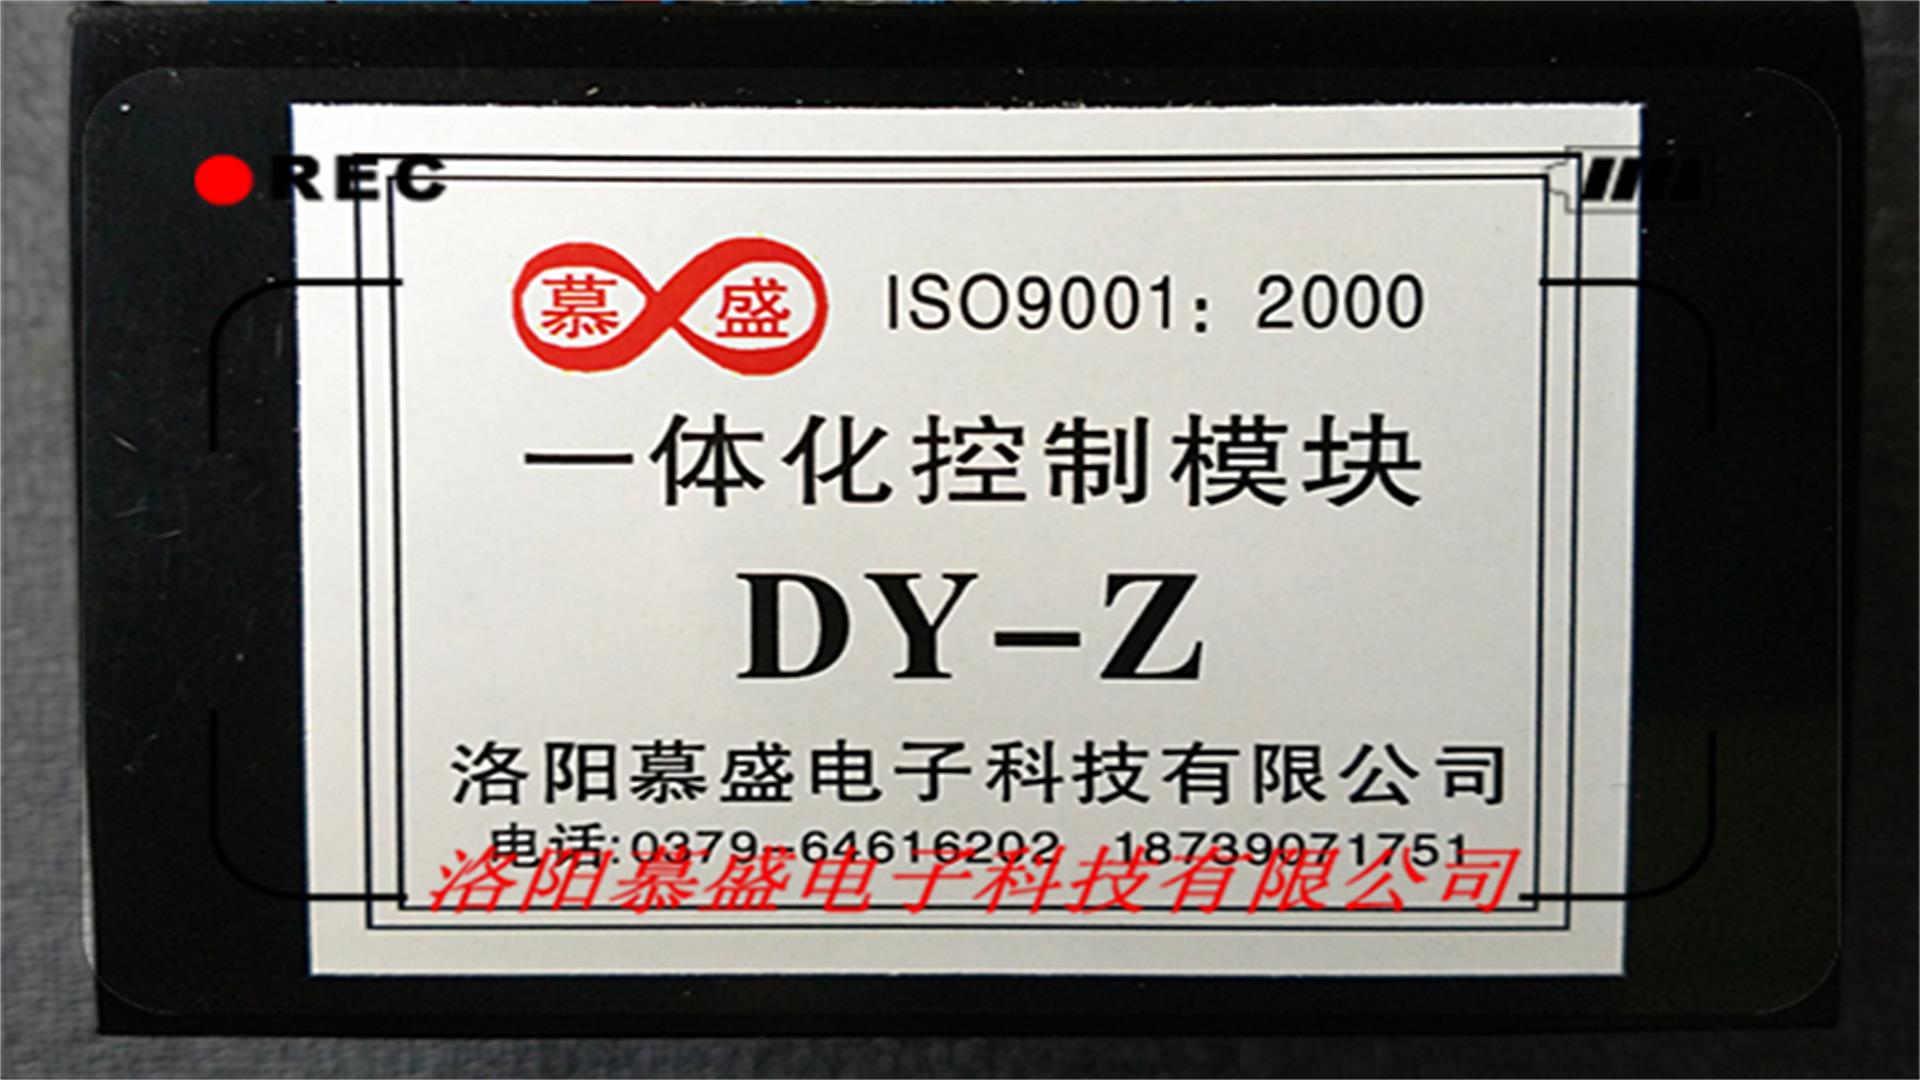 电动执行器一体化控制模块DY-Z慕盛科技